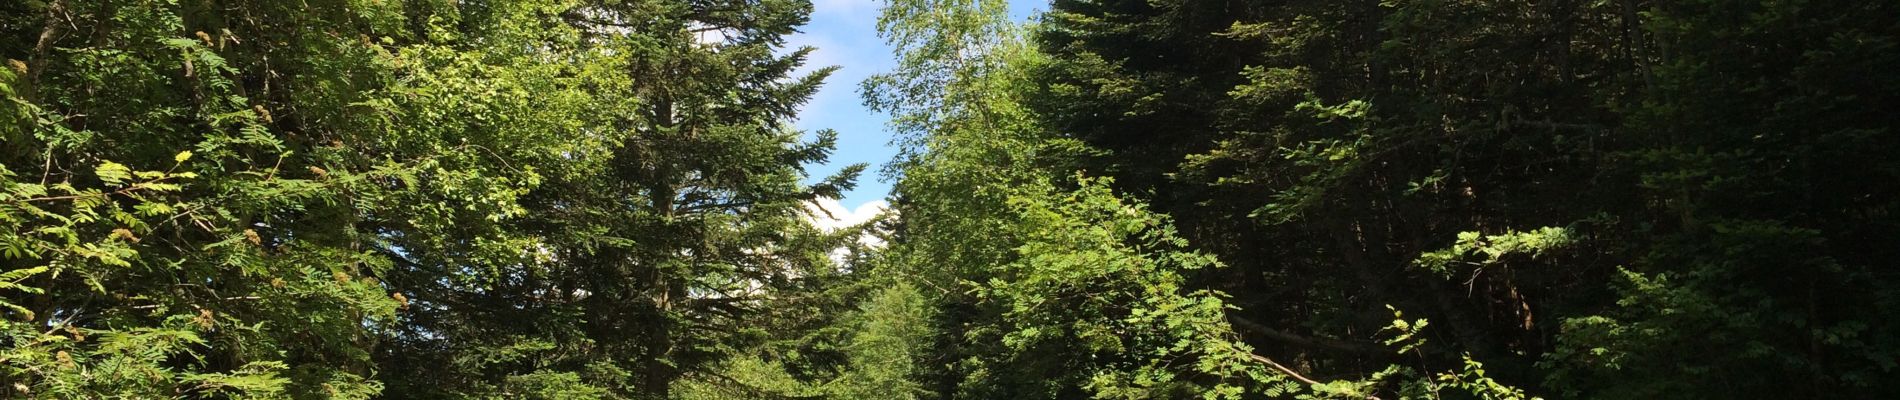 Trail Walking Bossòst - Col du portillon pic d’aubas et d’arbres - Photo